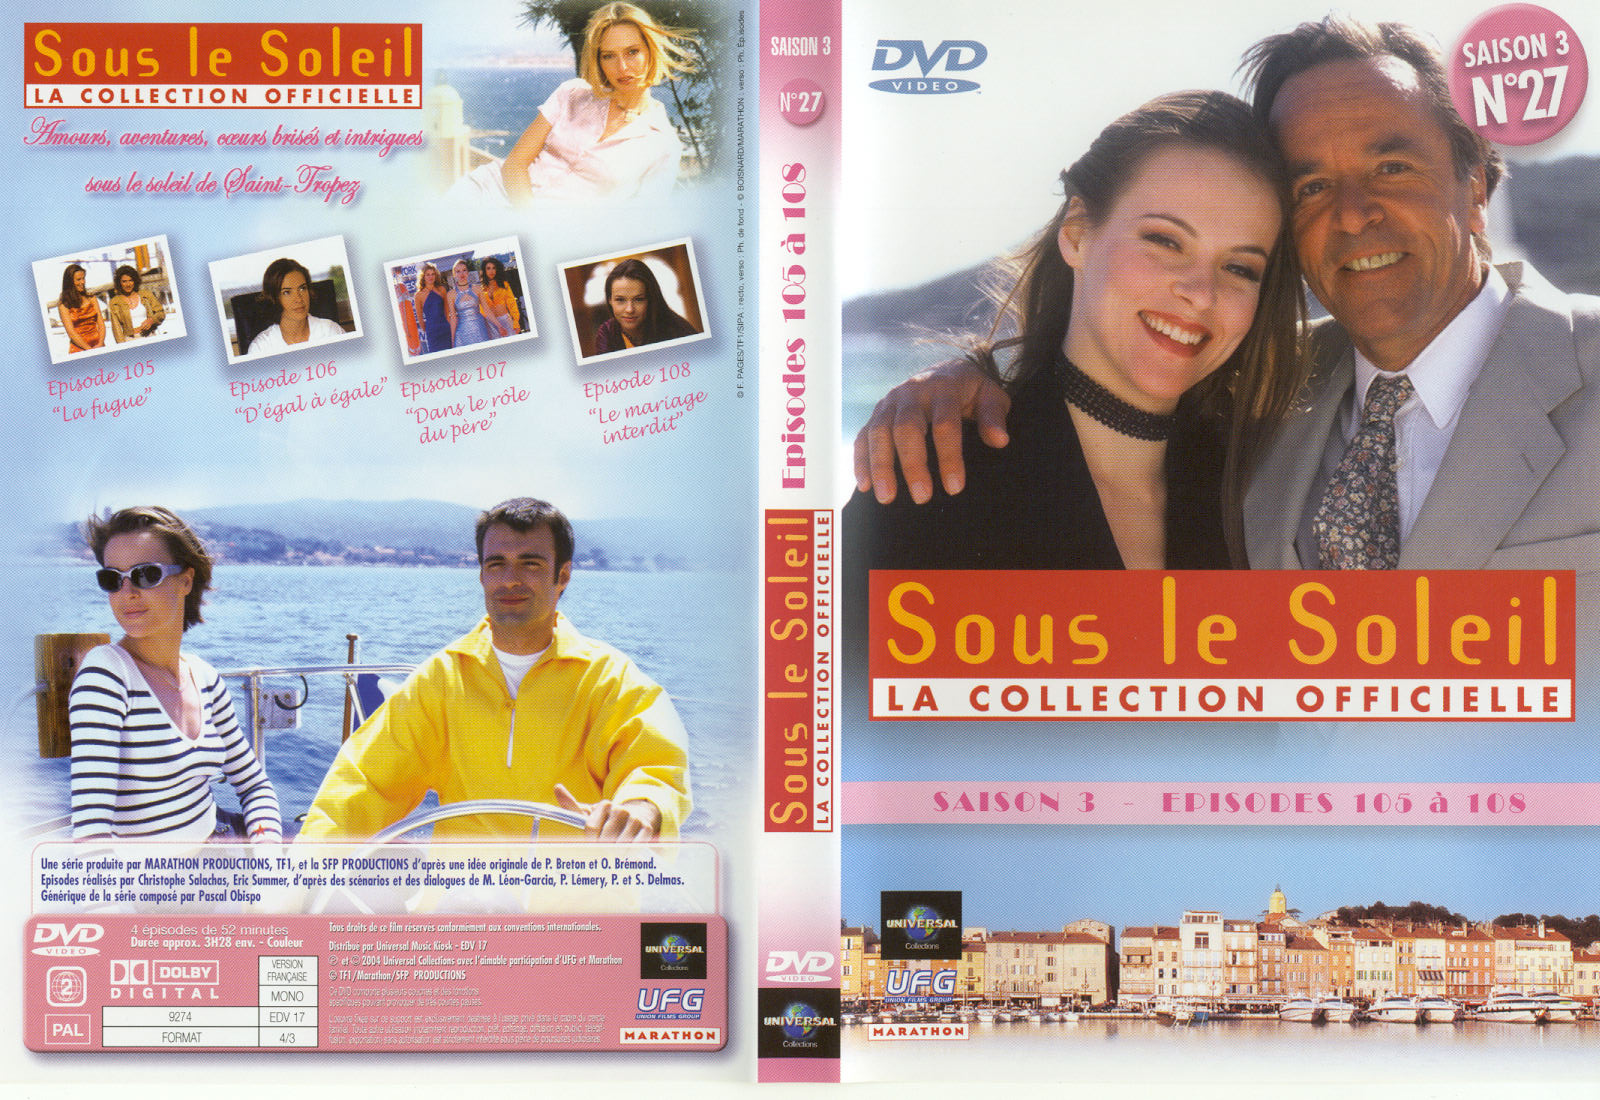 Jaquette DVD Sous le soleil saison 3 vol 27